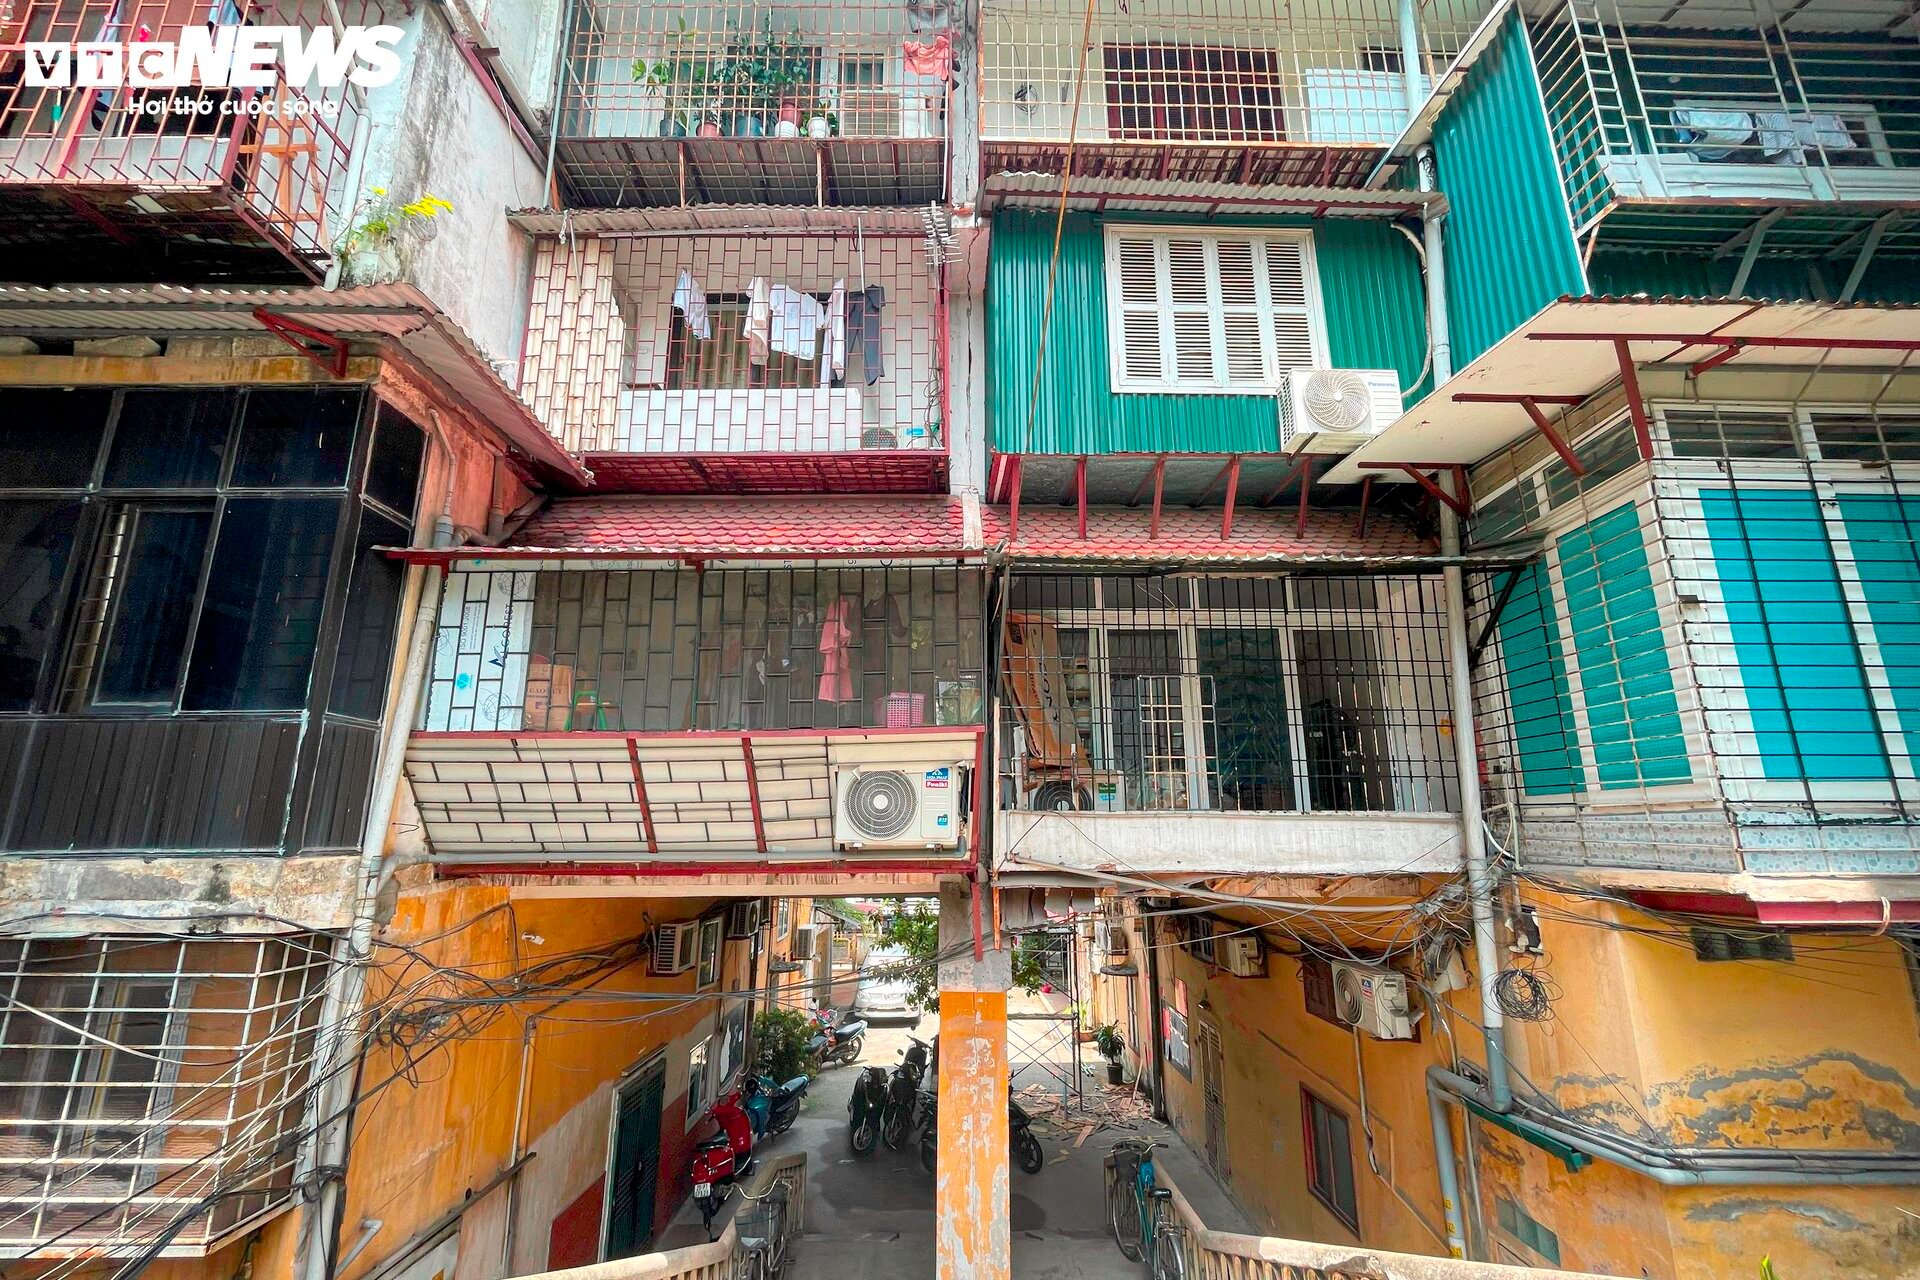 Ma trận chuồng cọp san sát ở Hà Nội: Những khung sắt nhốt người trong hỏa hoạn - 16